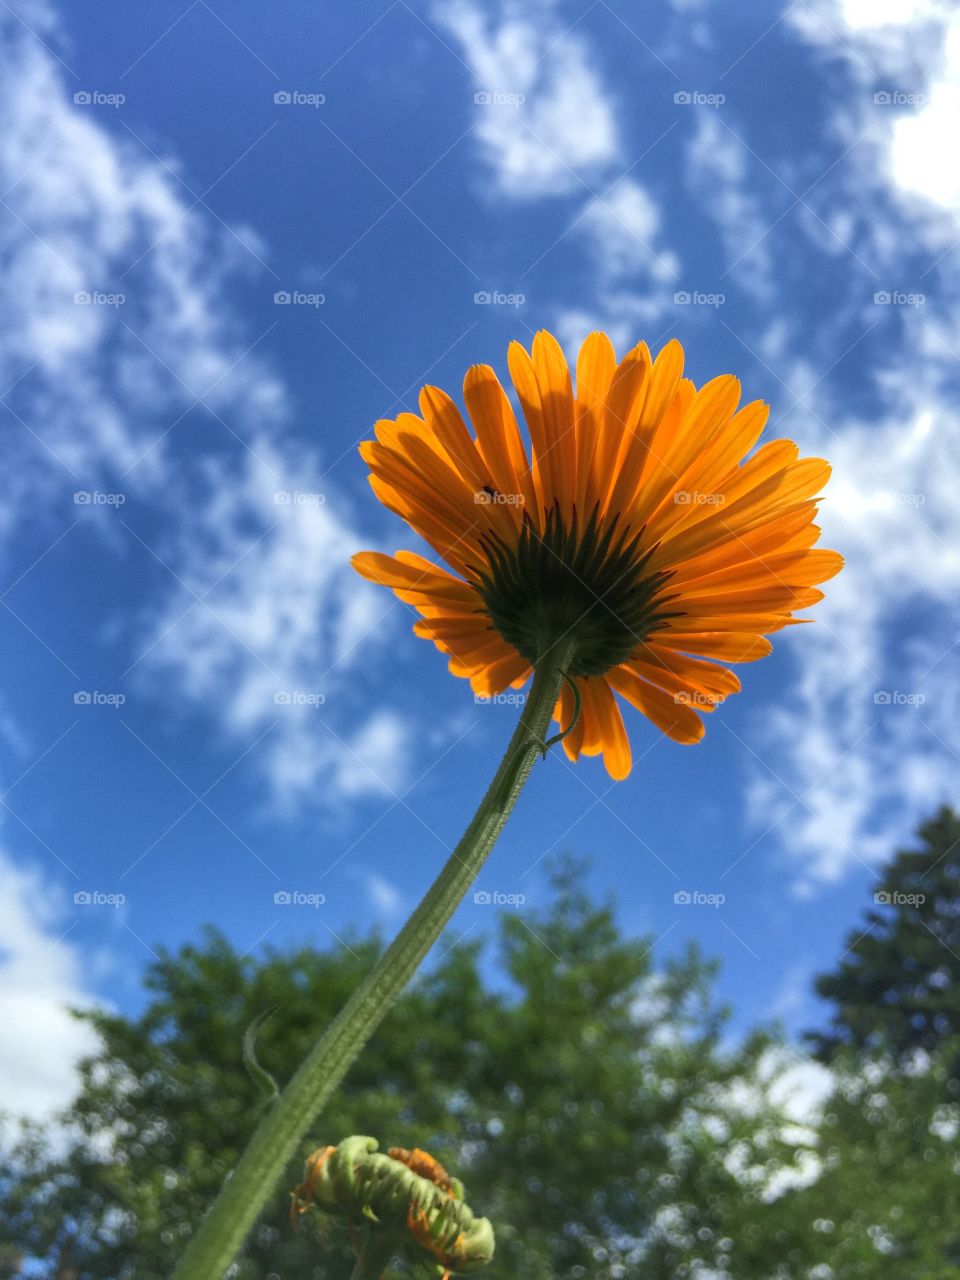 Flower in the Summer Sky